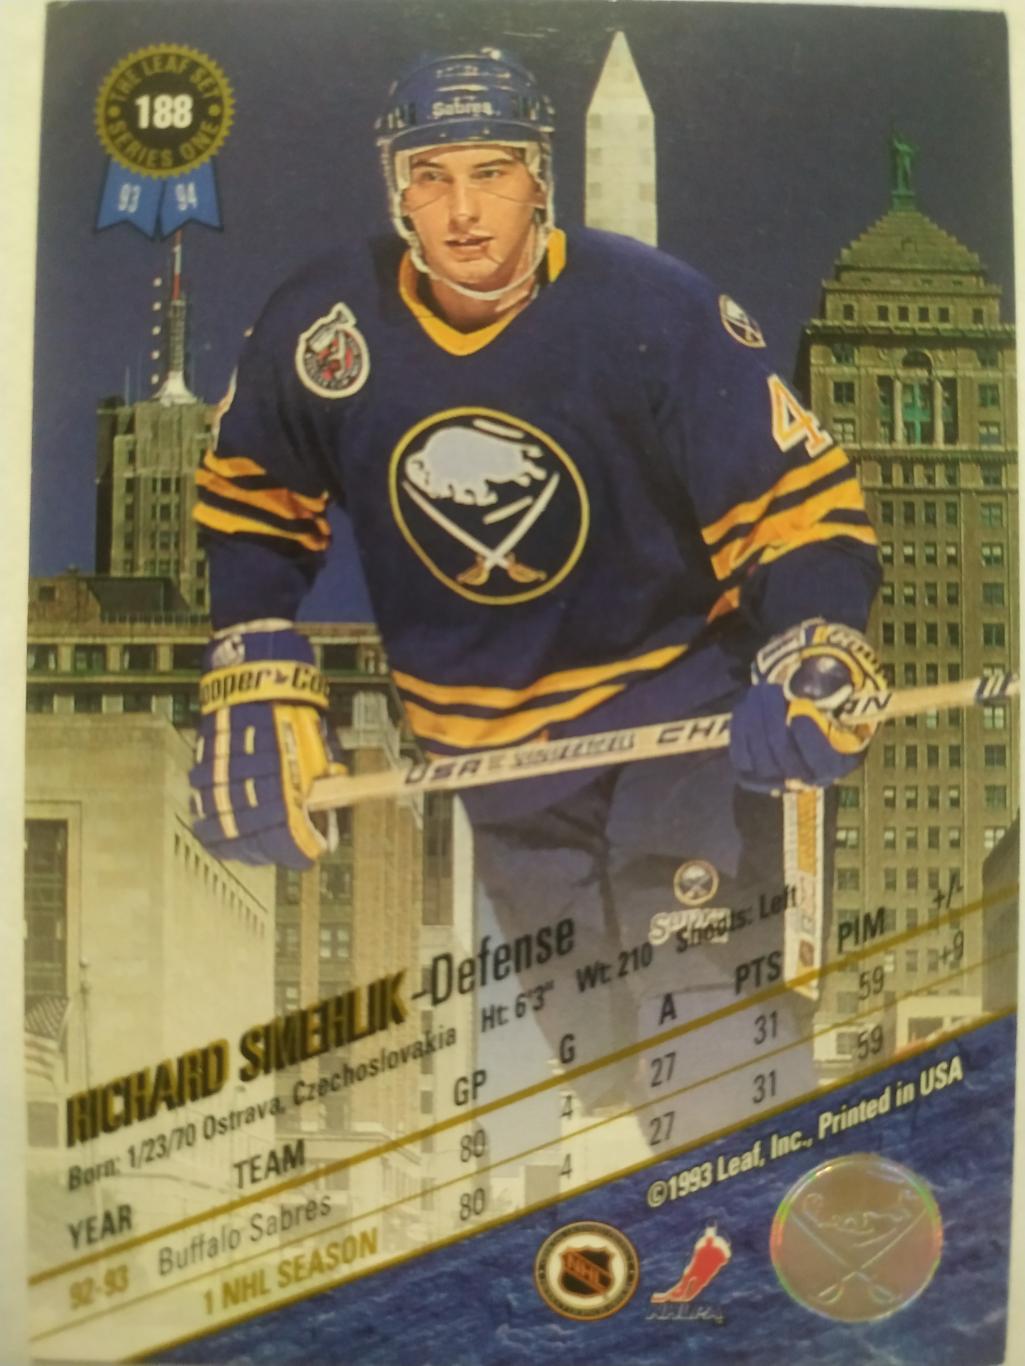 ХОККЕЙ КАРТОЧКА НХЛ LEAF SET SERIES ONE 1993-94 RICHARD SMEHLIK BUFFALO #188 1